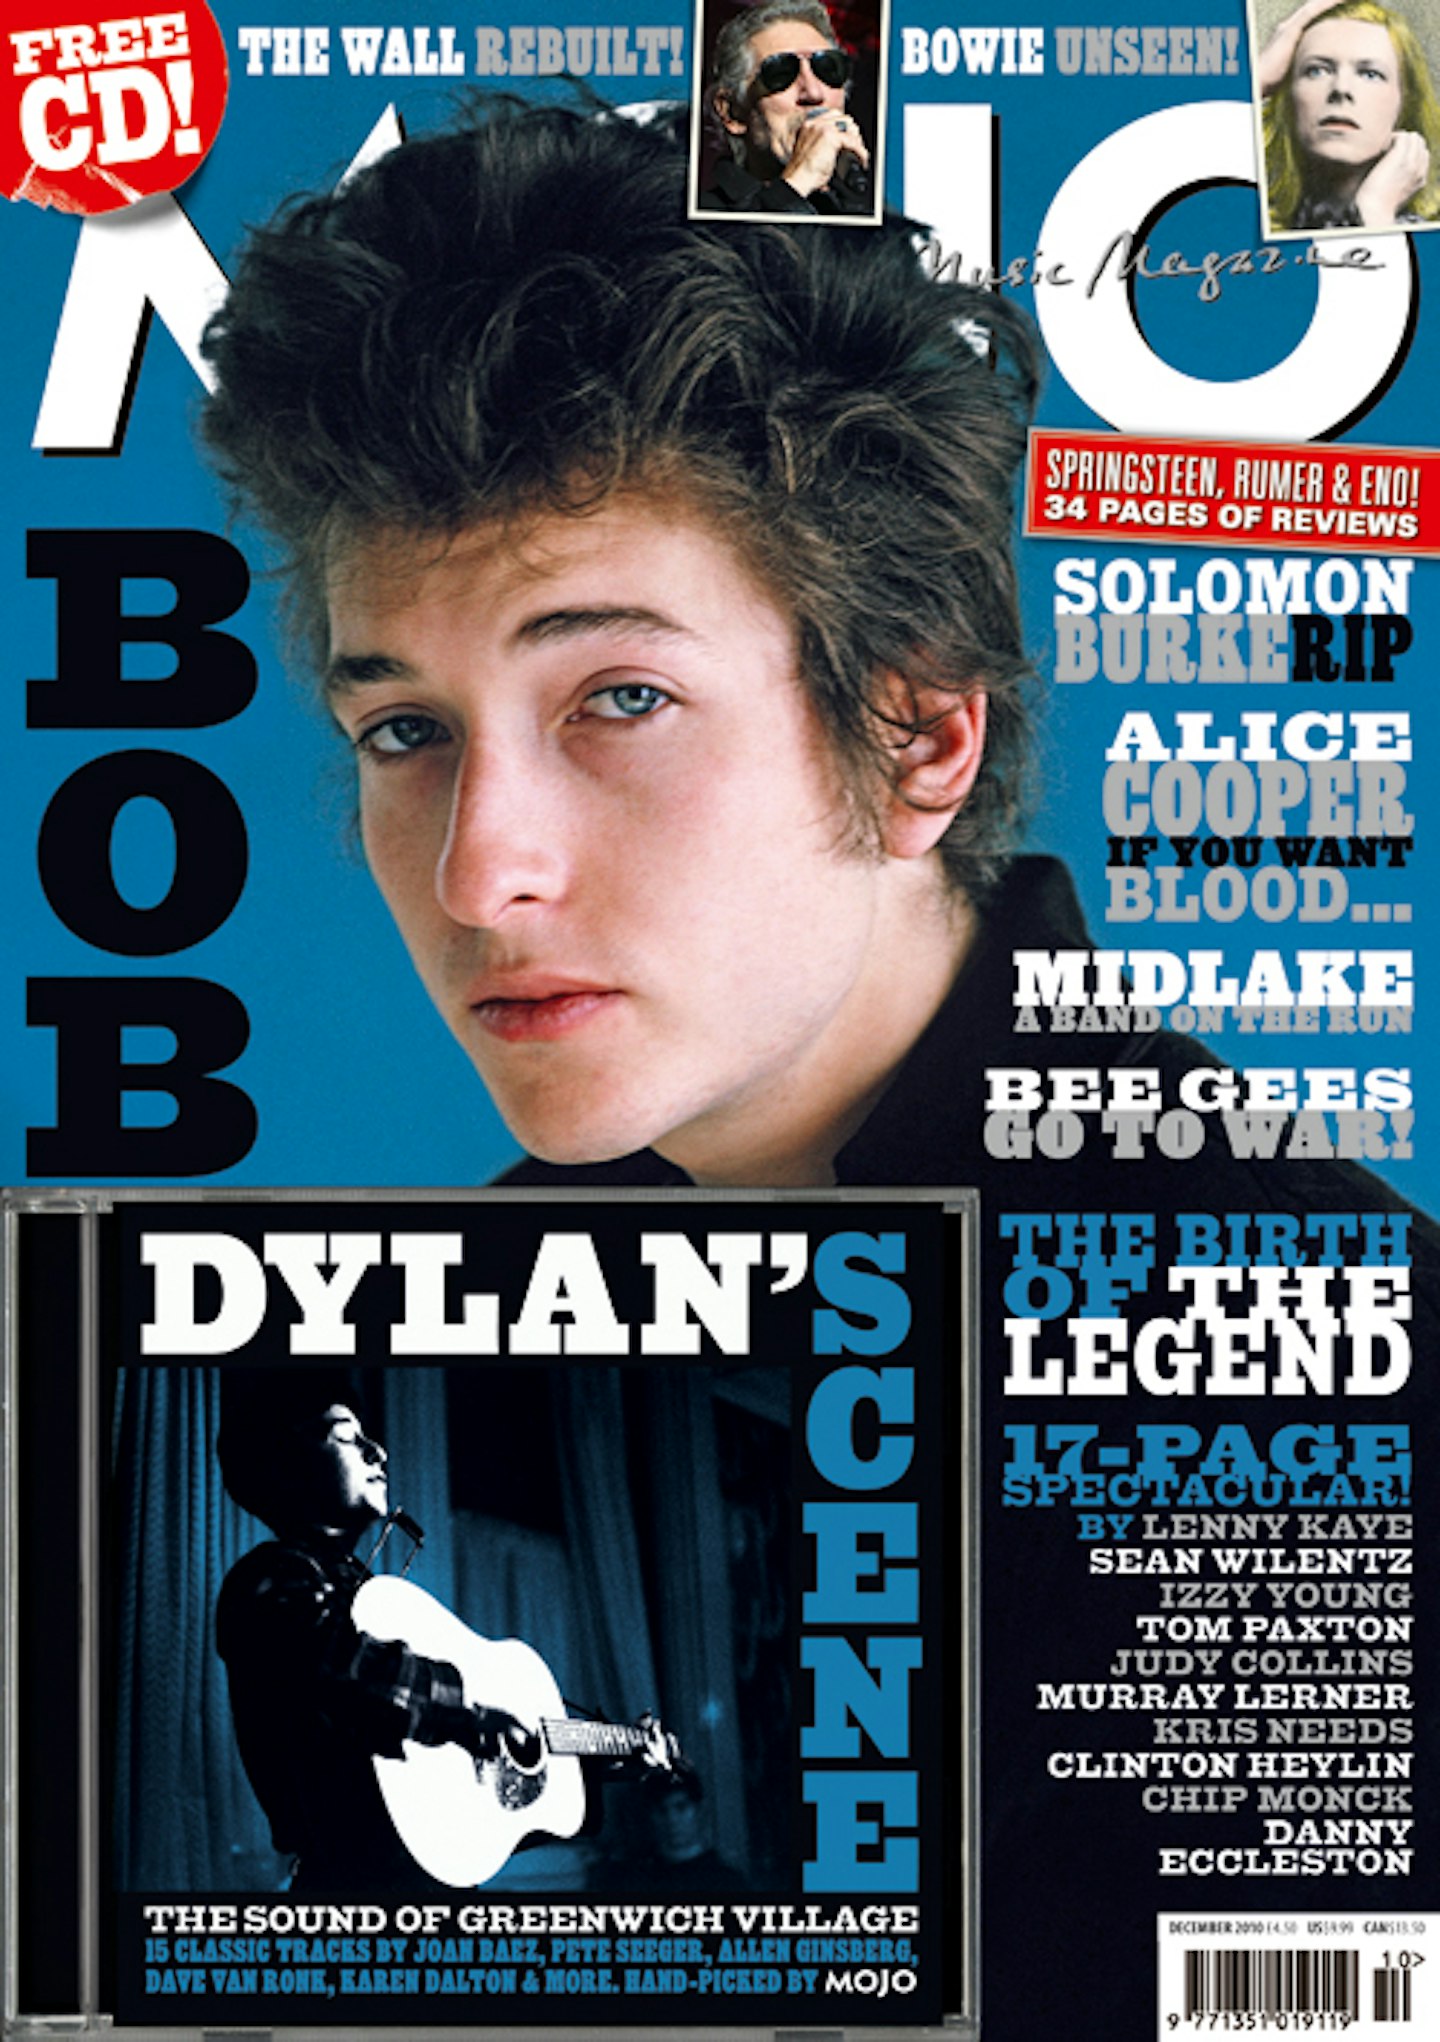 MOJO Issue 205 / December 2010